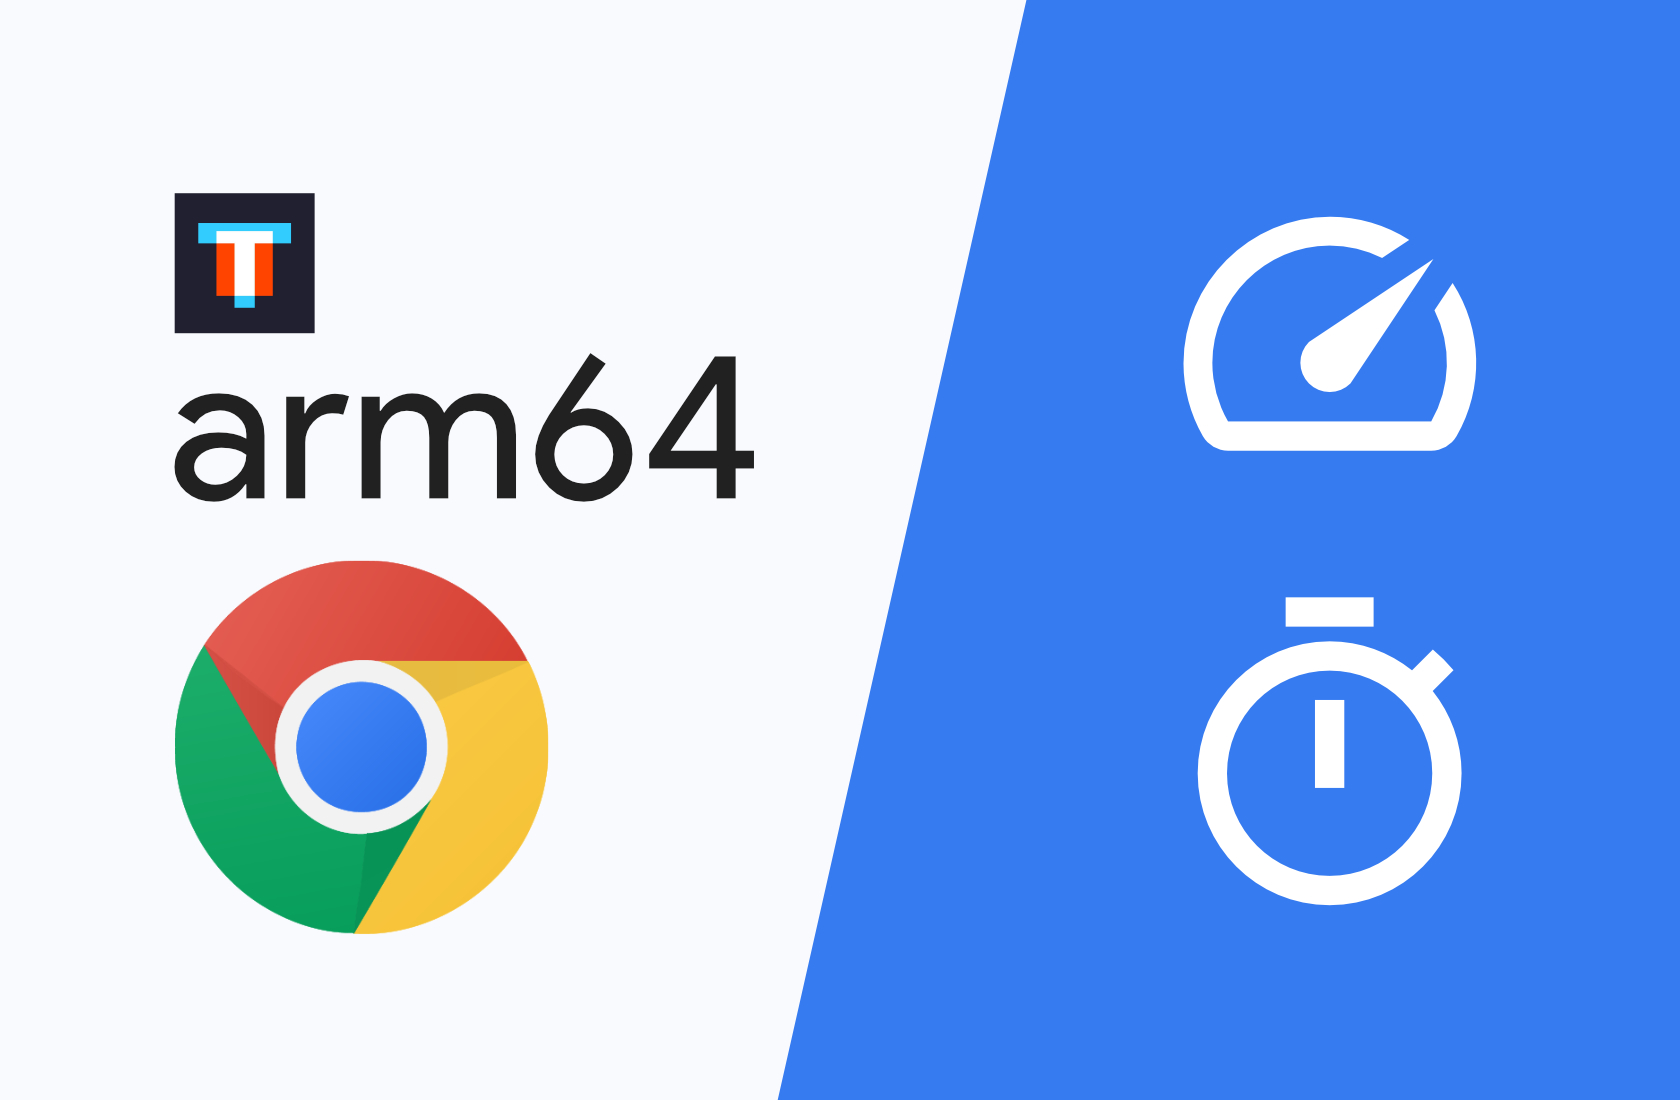 32-битный Chrome против нового 64-битного: сравниваем скорость и потребление ОЗУ на Android